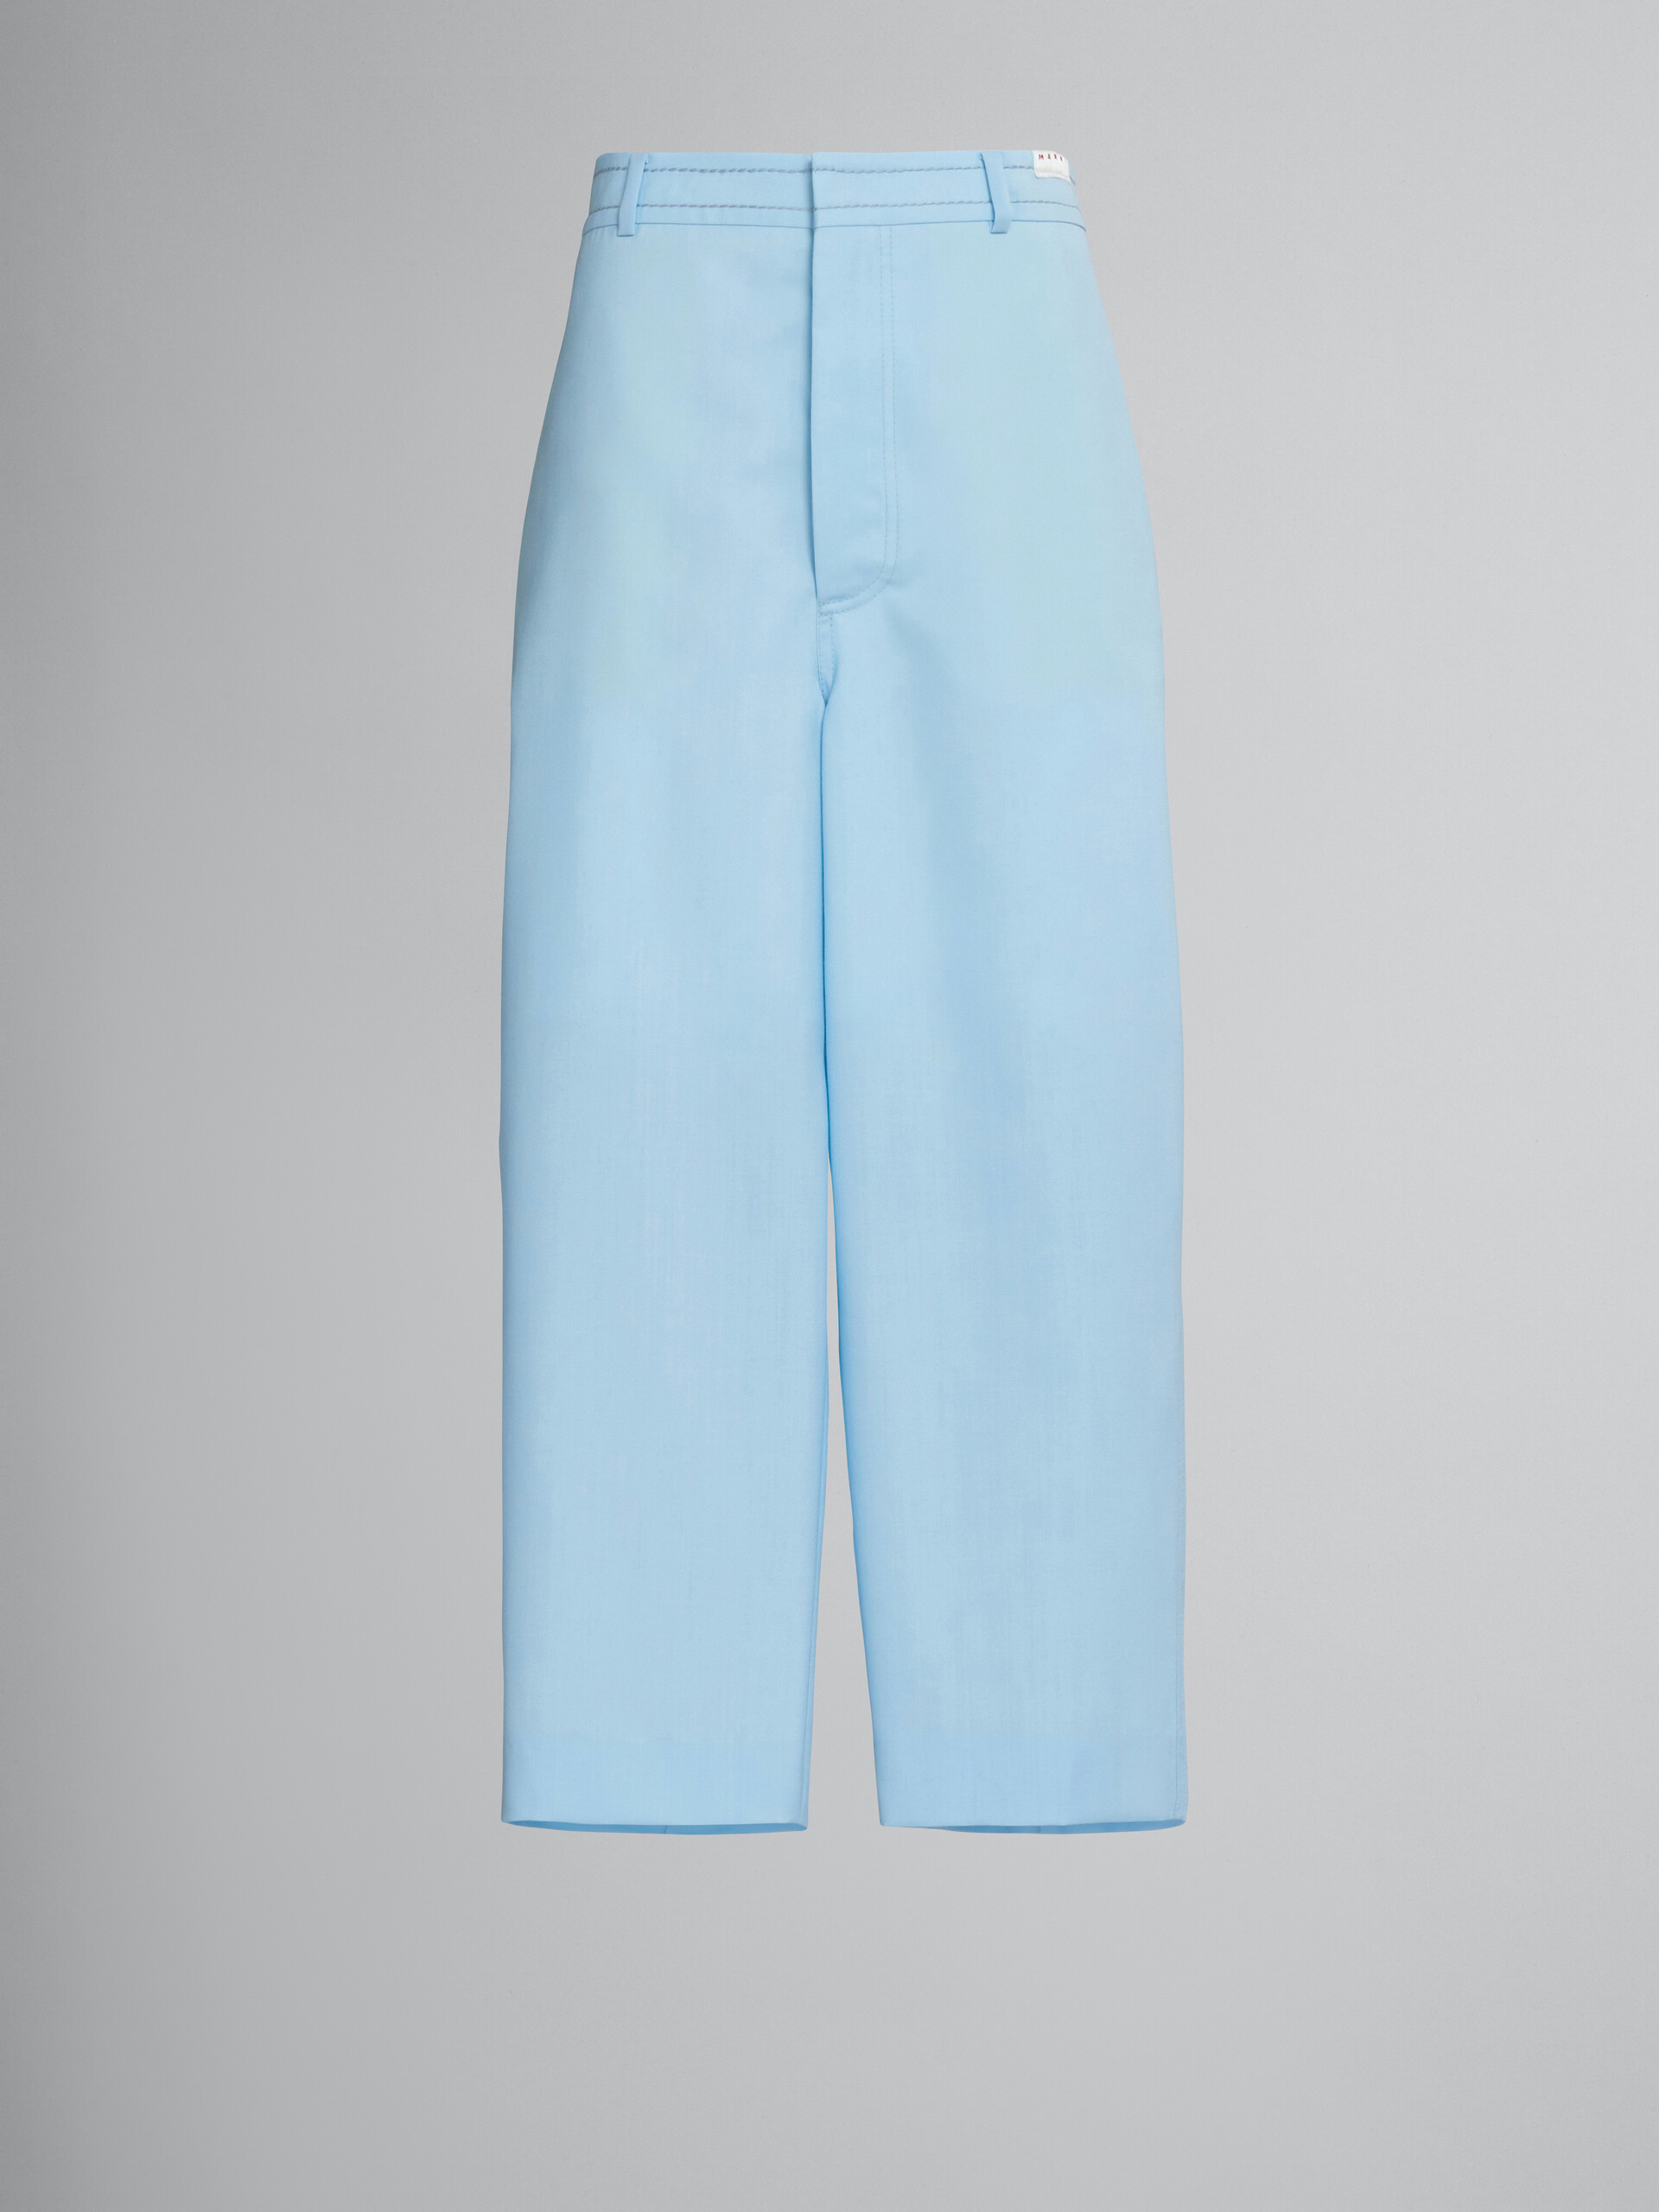 Kurz geschnittene Hose aus hellblauer Wolle - Hosen - Image 1